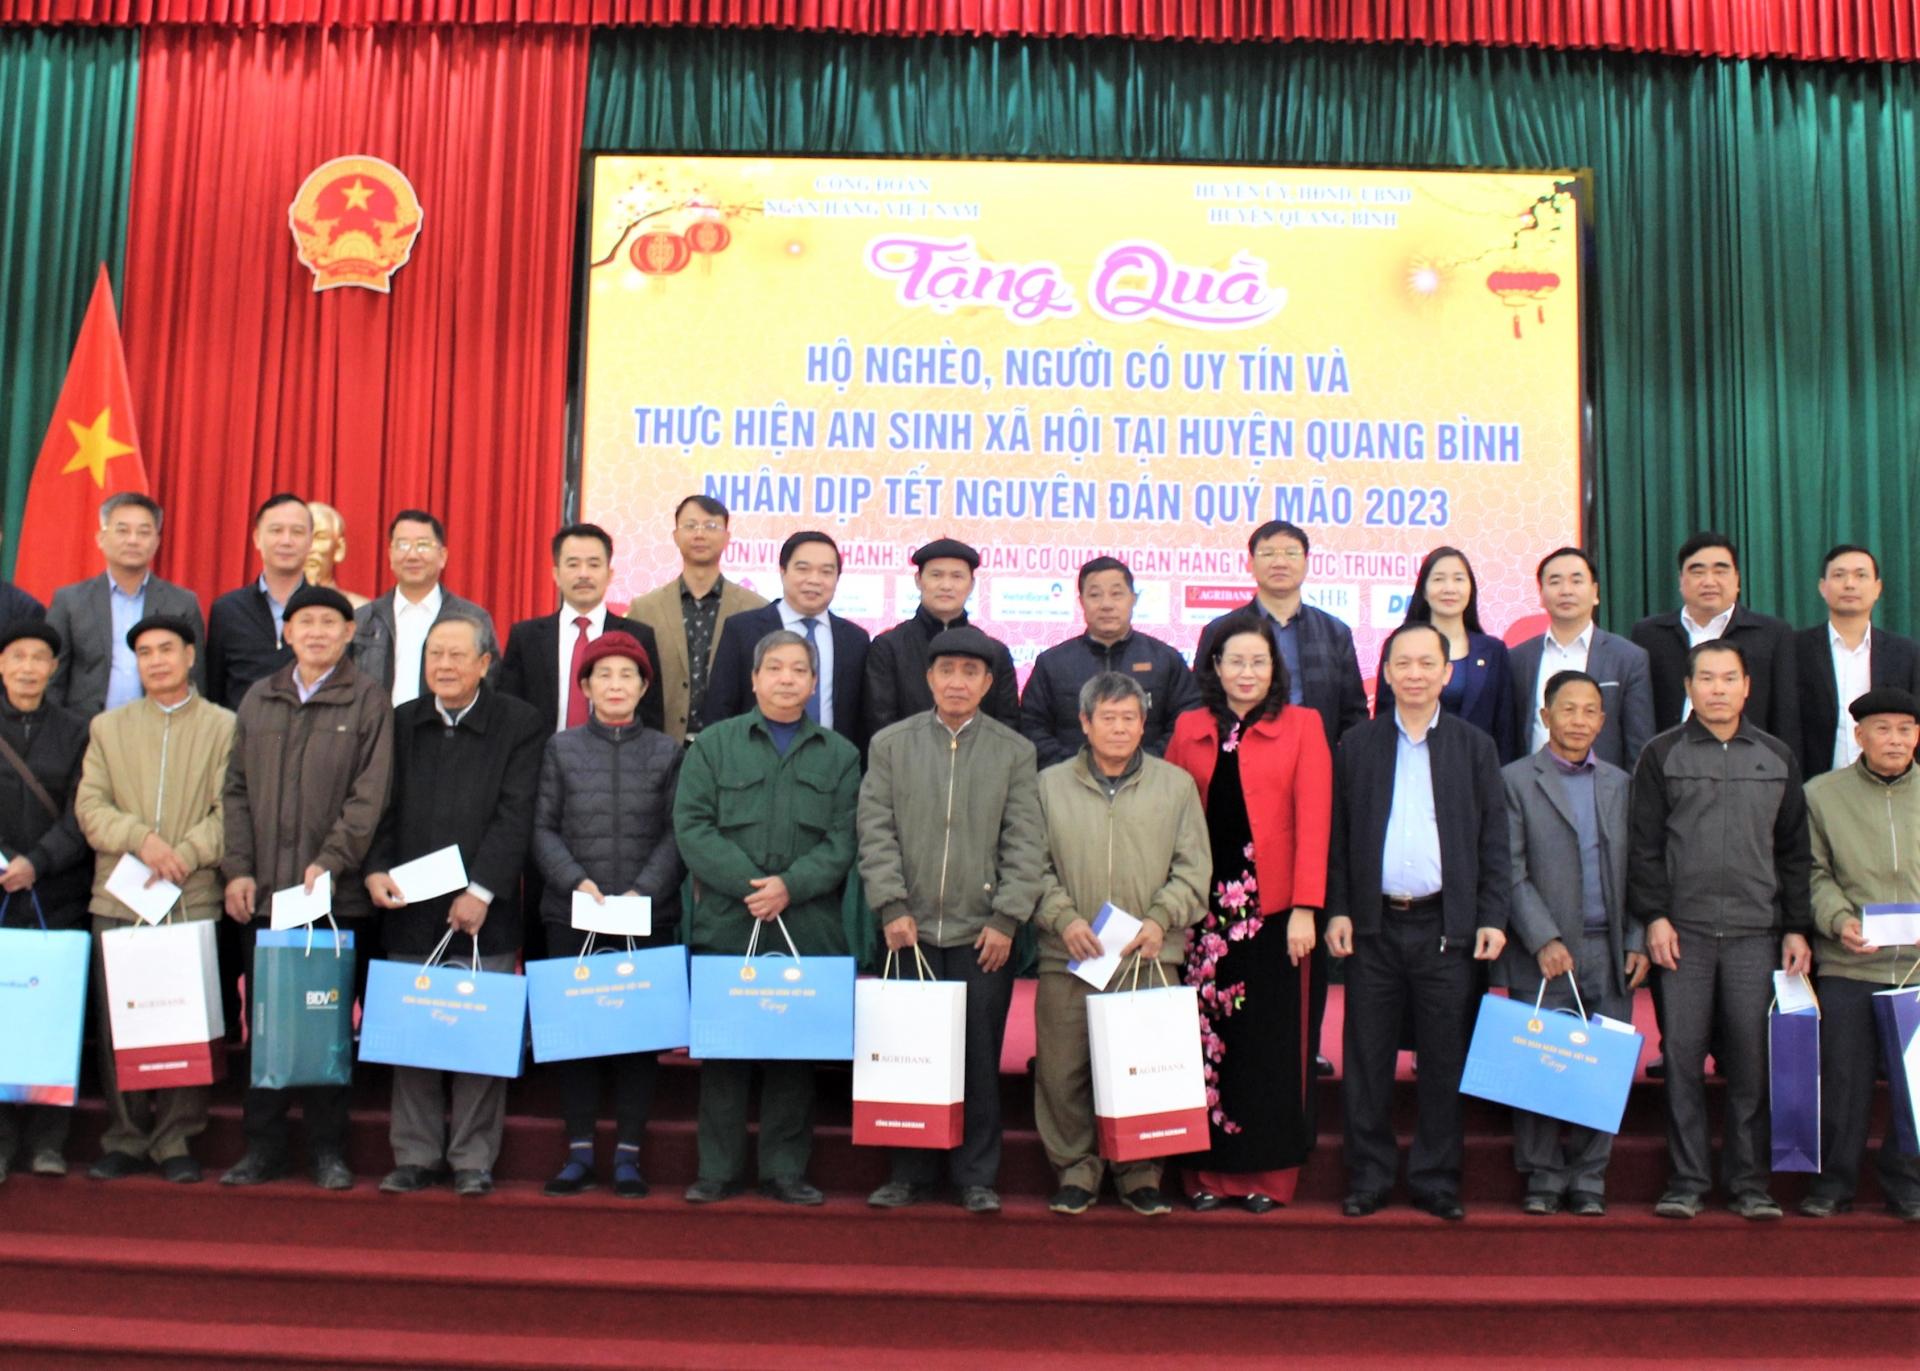 Công đoàn Ngân hàng Việt Nam tặng quà hộ nghèo, người có uy tín tại huyện Quang Bình nhân dịp Tết Nguyên đán Quý Mão 2023